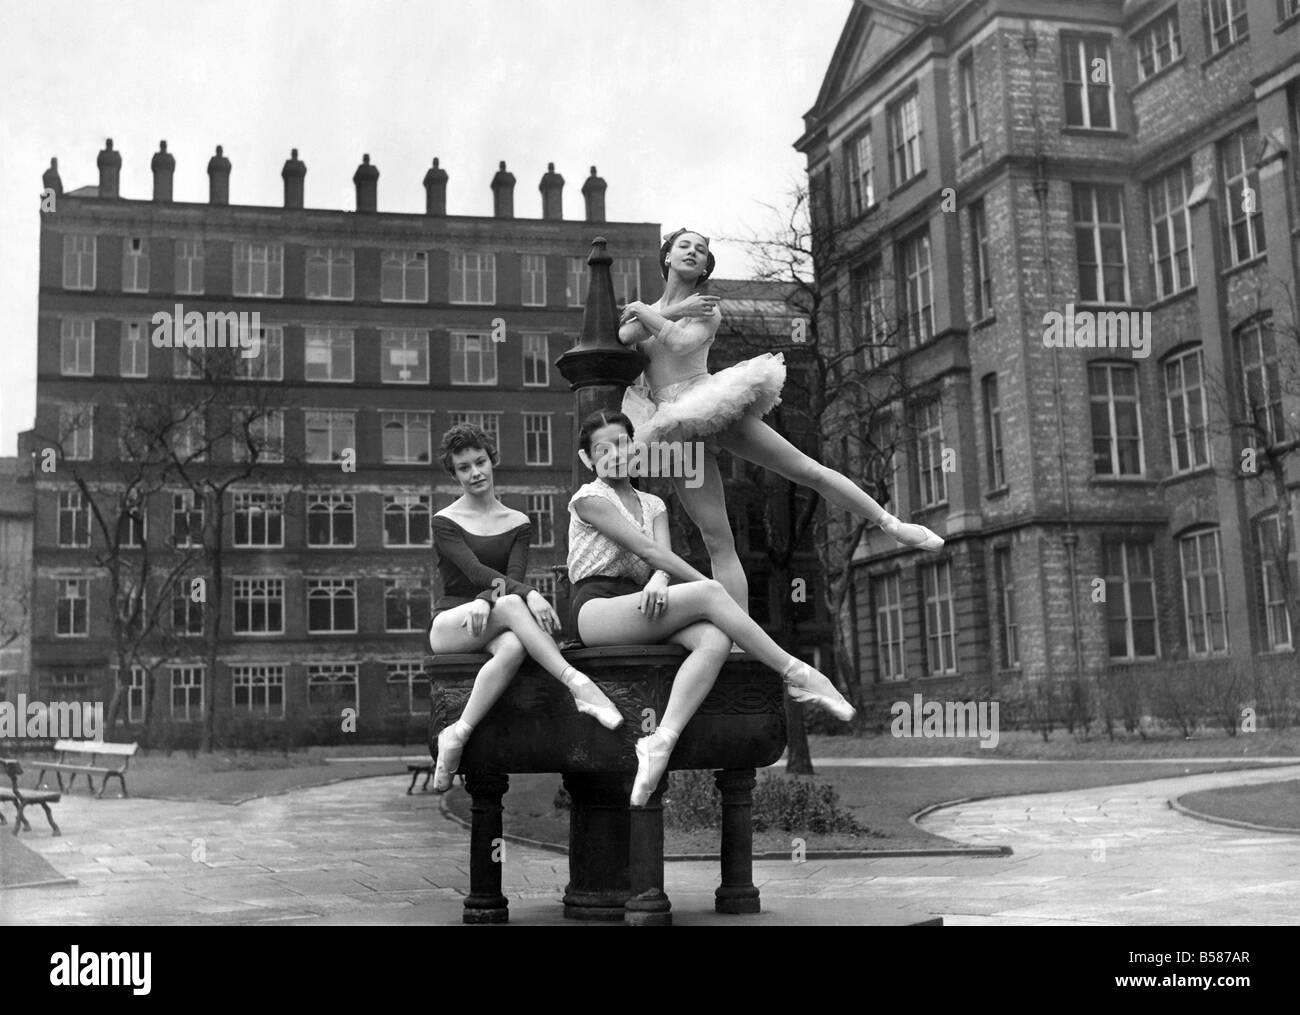 Trois des danseuses de ballet Festival qui s'ouvre au théâtre Palace ont été attirés par le beau temps pour répéter dans un parc en Whitworth Street Manchester. De gauche à droite : Belinda Wright, Sonia Arova et Nathalie Krassovska. Avril 1952 P005166 Banque D'Images